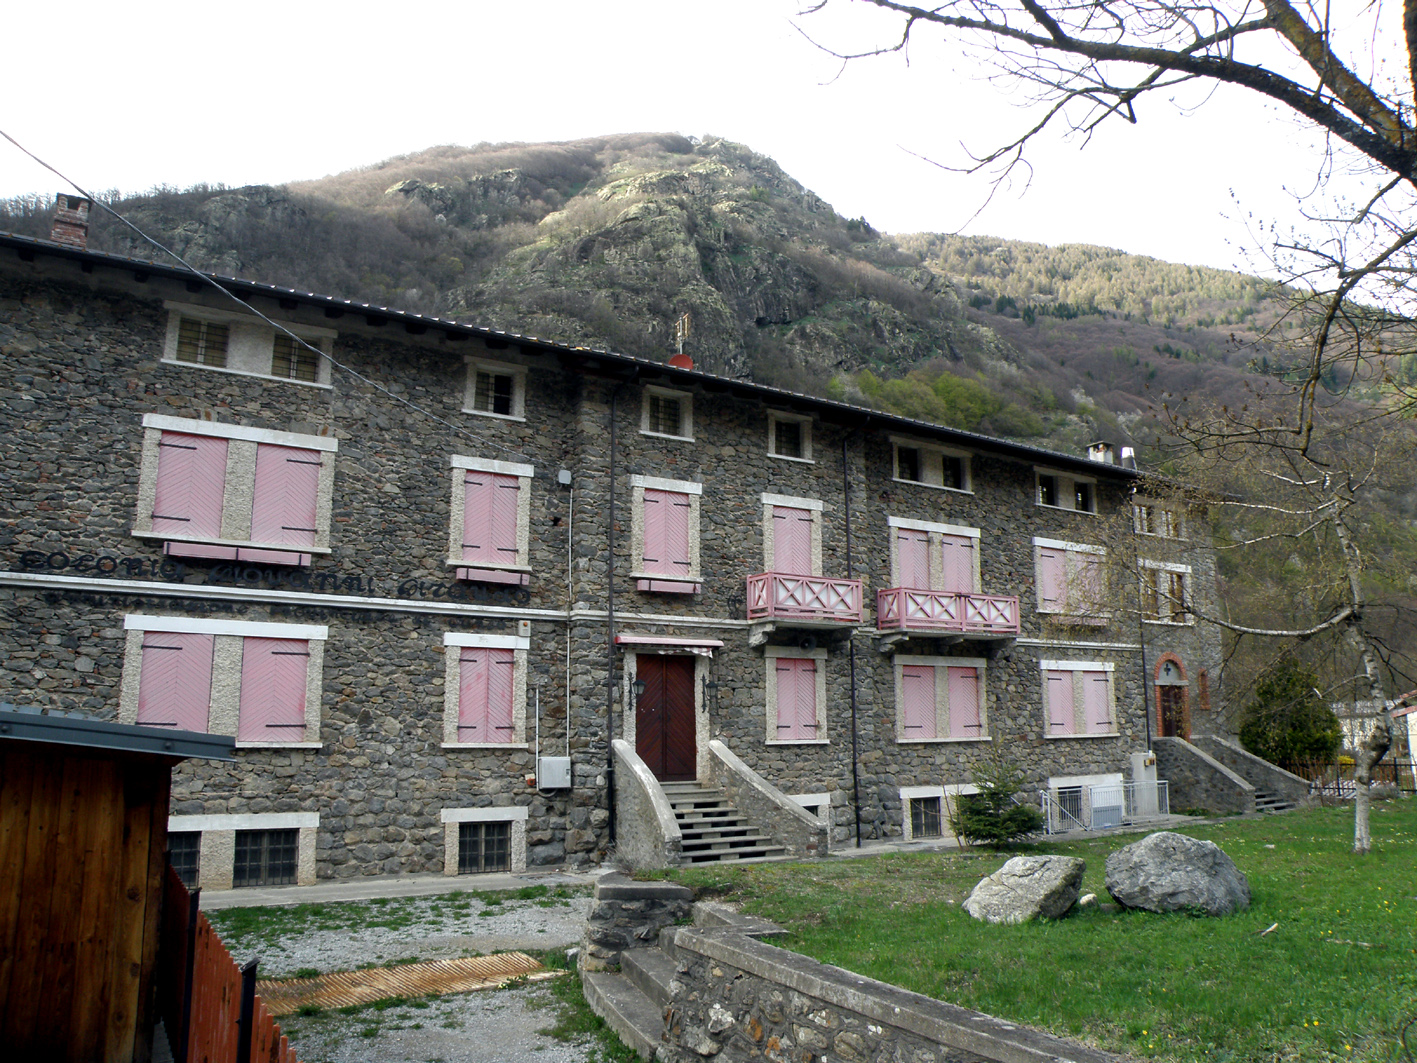 Apre la Casa alpina nel Parco naturale Alpi Marittime